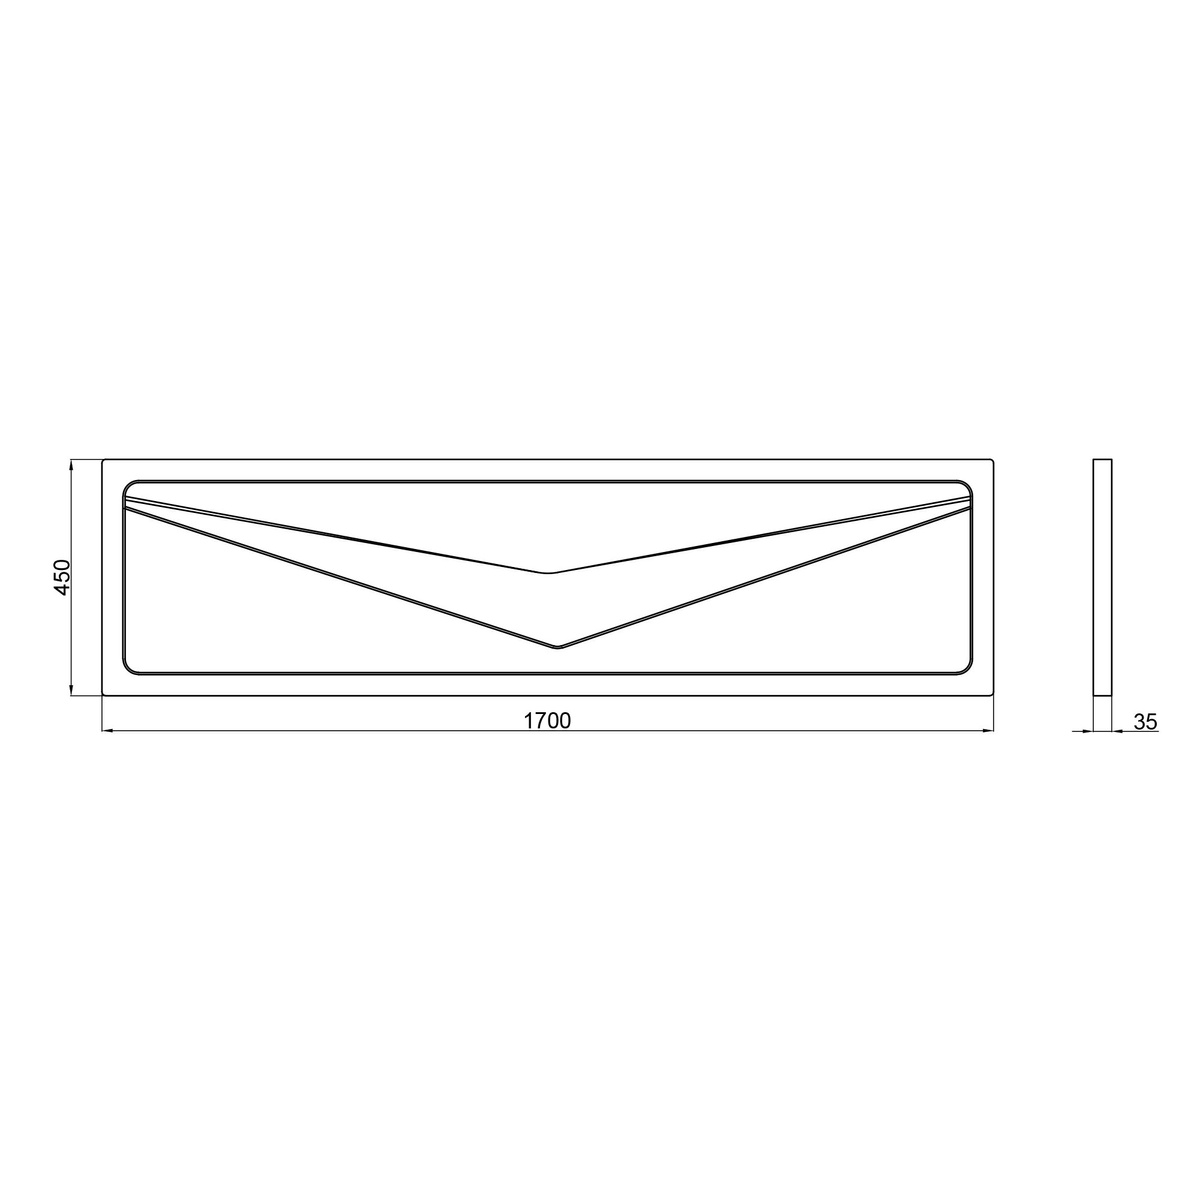 Панель для ванны белая акриловая LIDZ PANEL R 1700x450мм LPR170